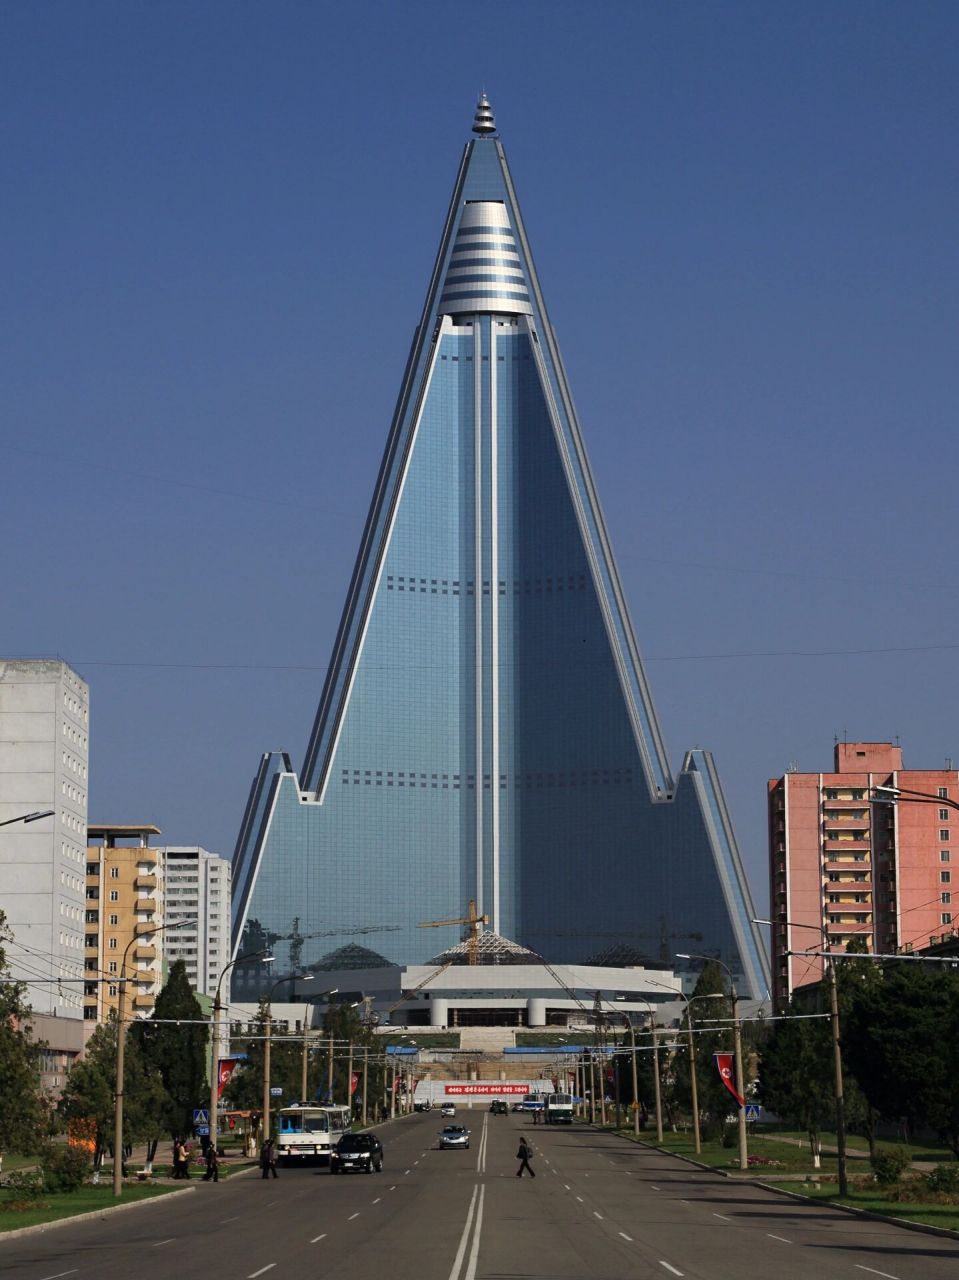 2017年启用的金字塔造型的平壤柳京酒店 未完成时感觉更酷,1987年动工